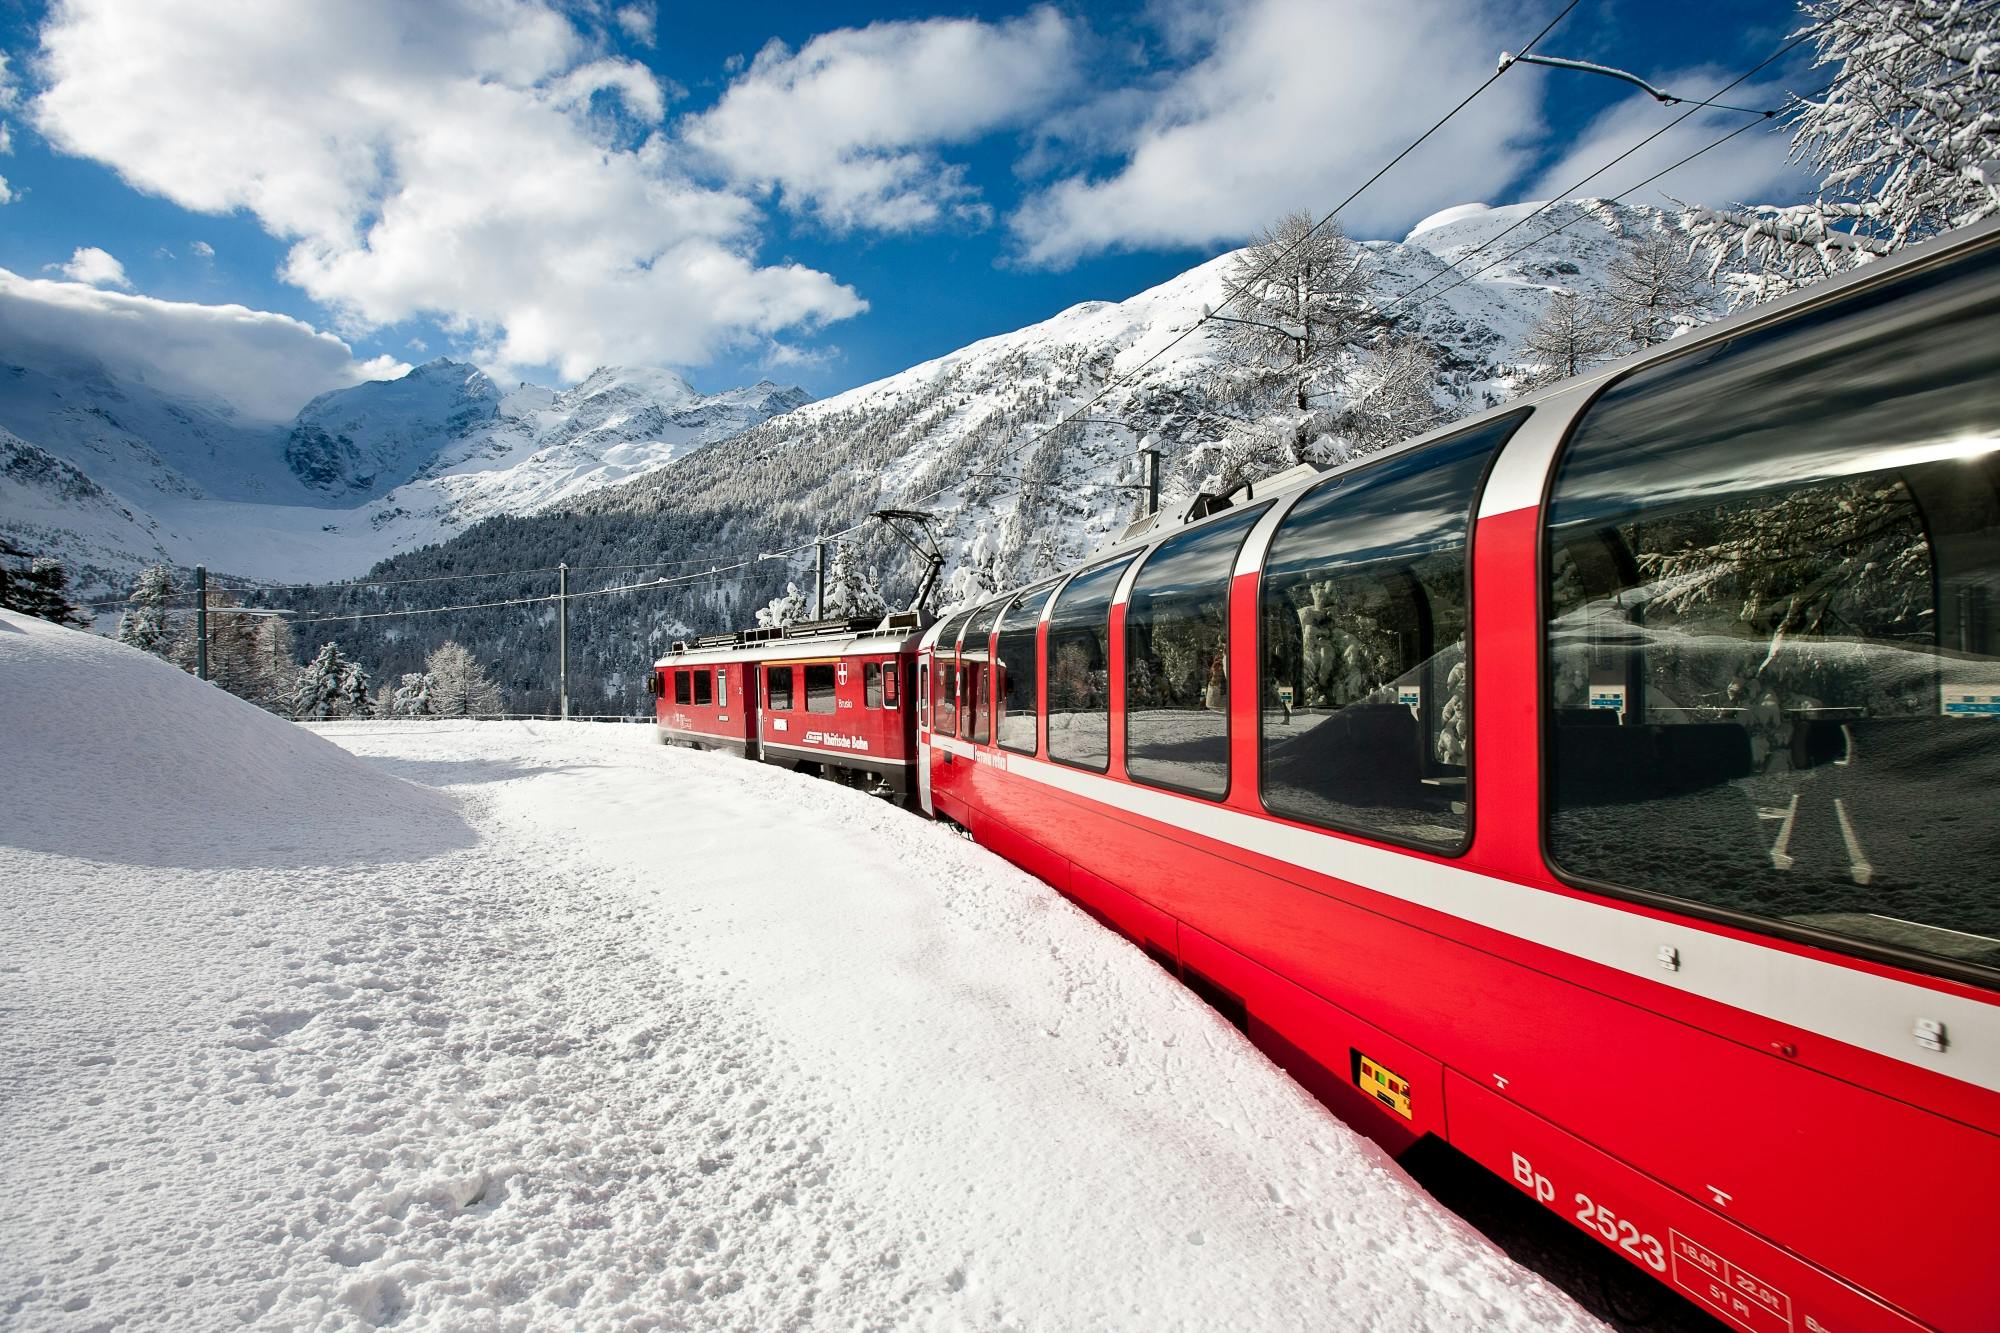 Bernina Express scenic train ride from Sankt Moritz to Tirano